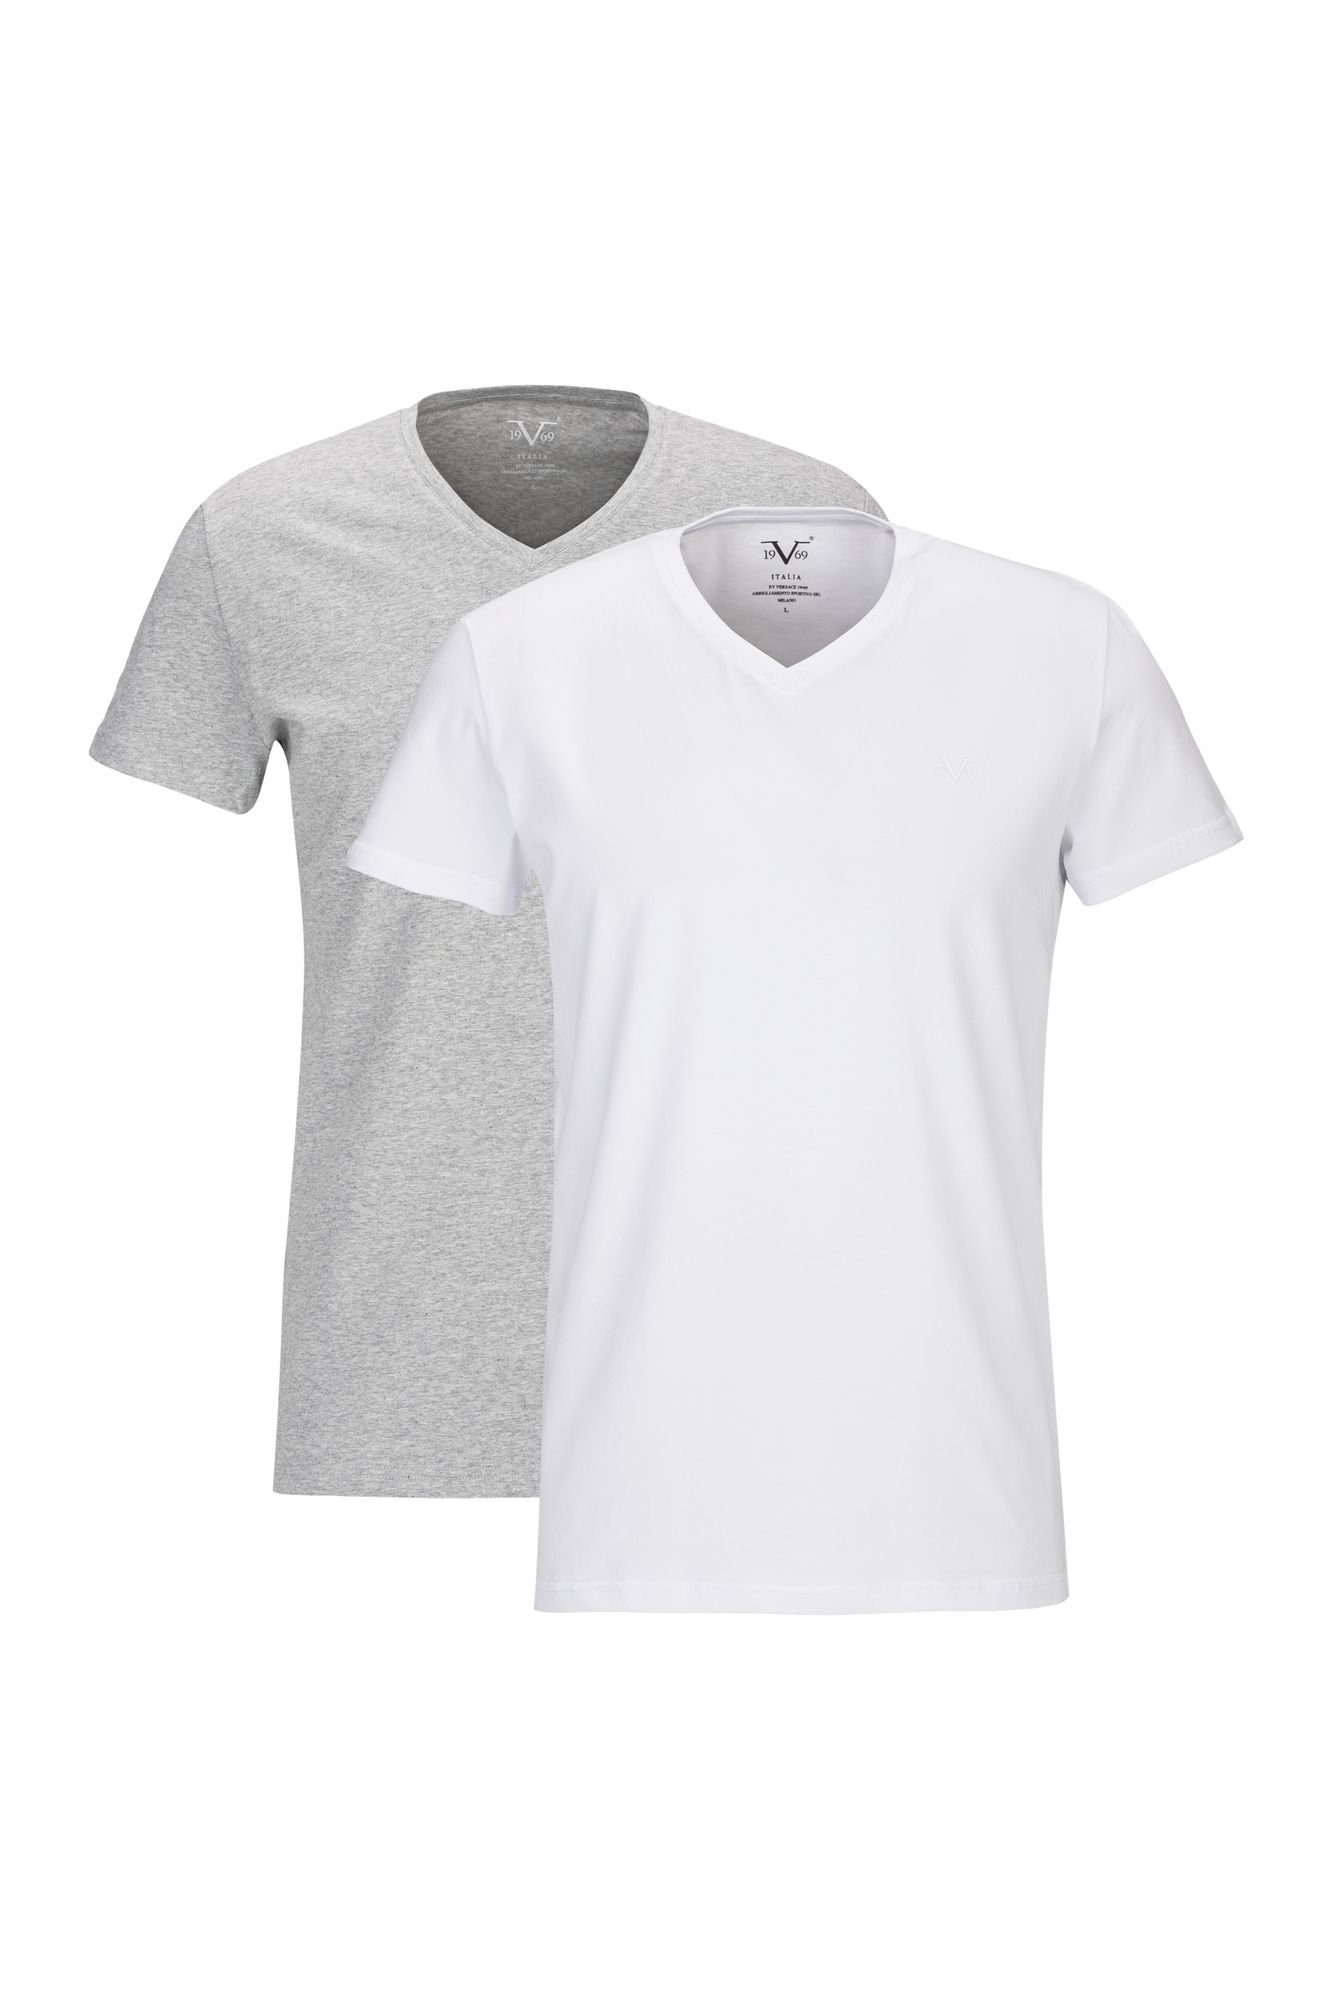 19V69 Italia by Versace T-Shirt Unterziehshirt Unterhemd mit Kurzarm V-Ausschnitt für Herren mit einem kleinem Ton-in-Ton Logo auf der Brust weiß